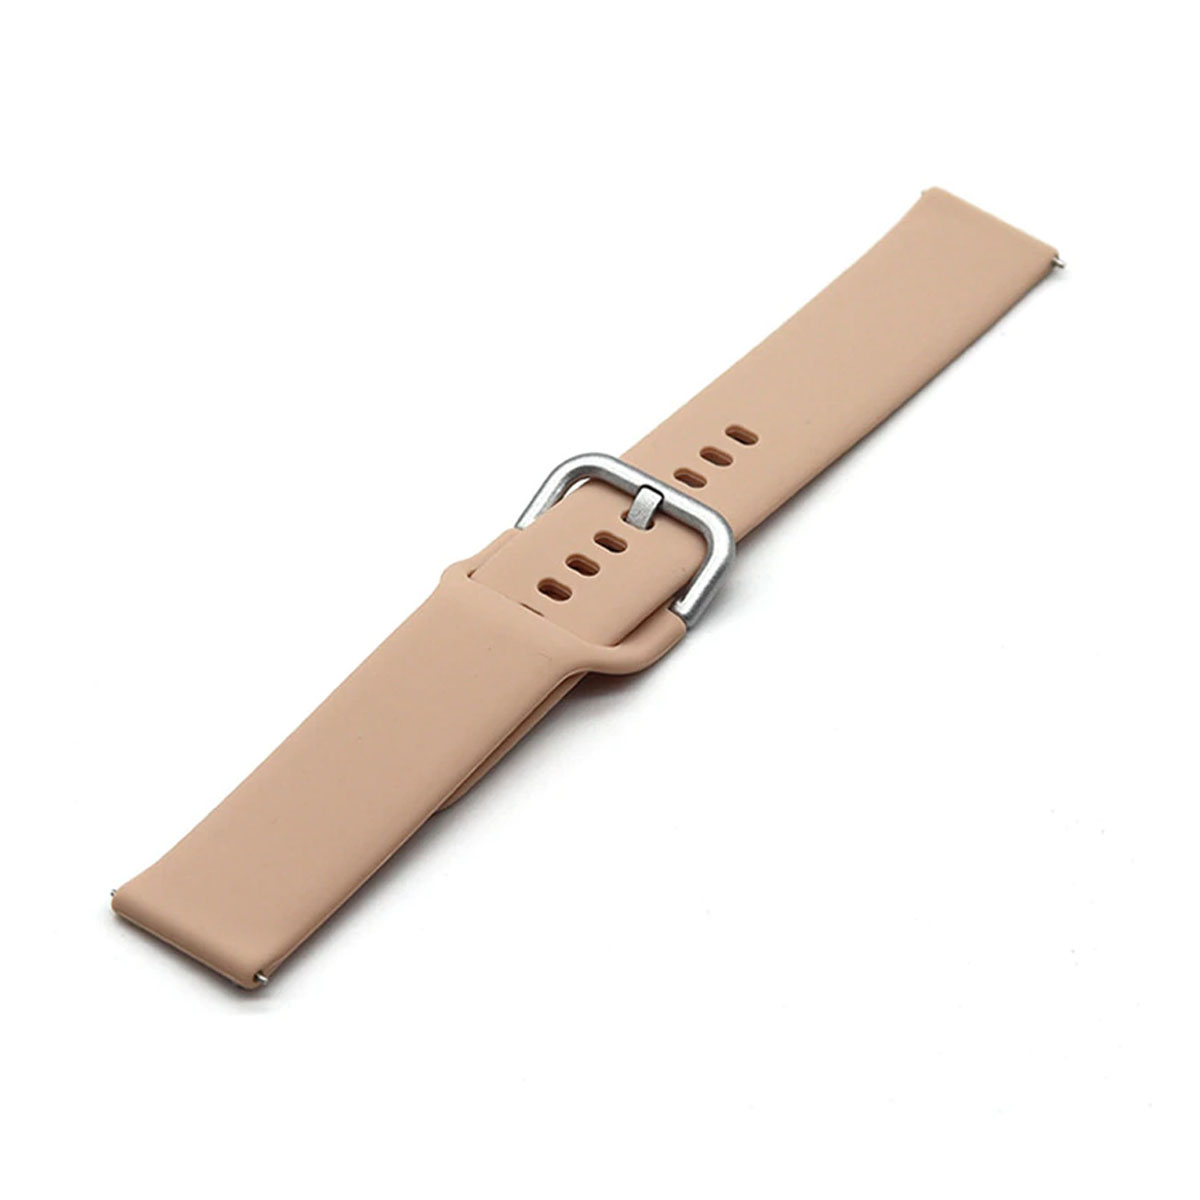 Ремешок для смарт часов универсальный 22 мм для SAMSUNG, XIAOMI, HUAWEI, силикон, цвет розовый песок